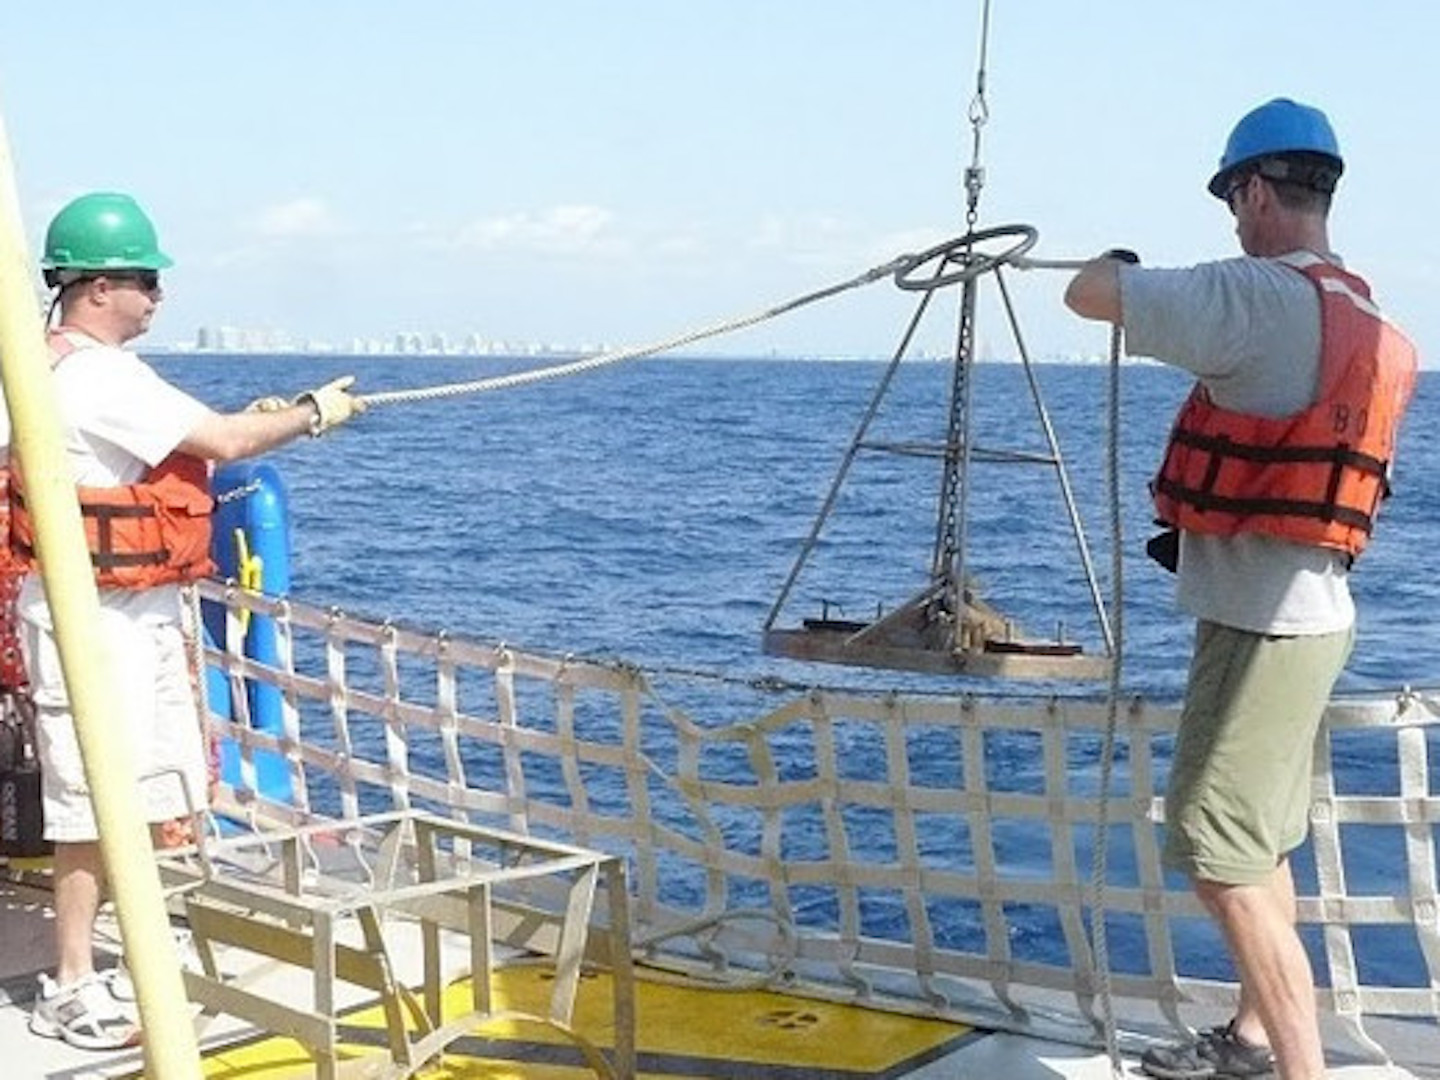 Field team members raising equipment out of ocean during field work.